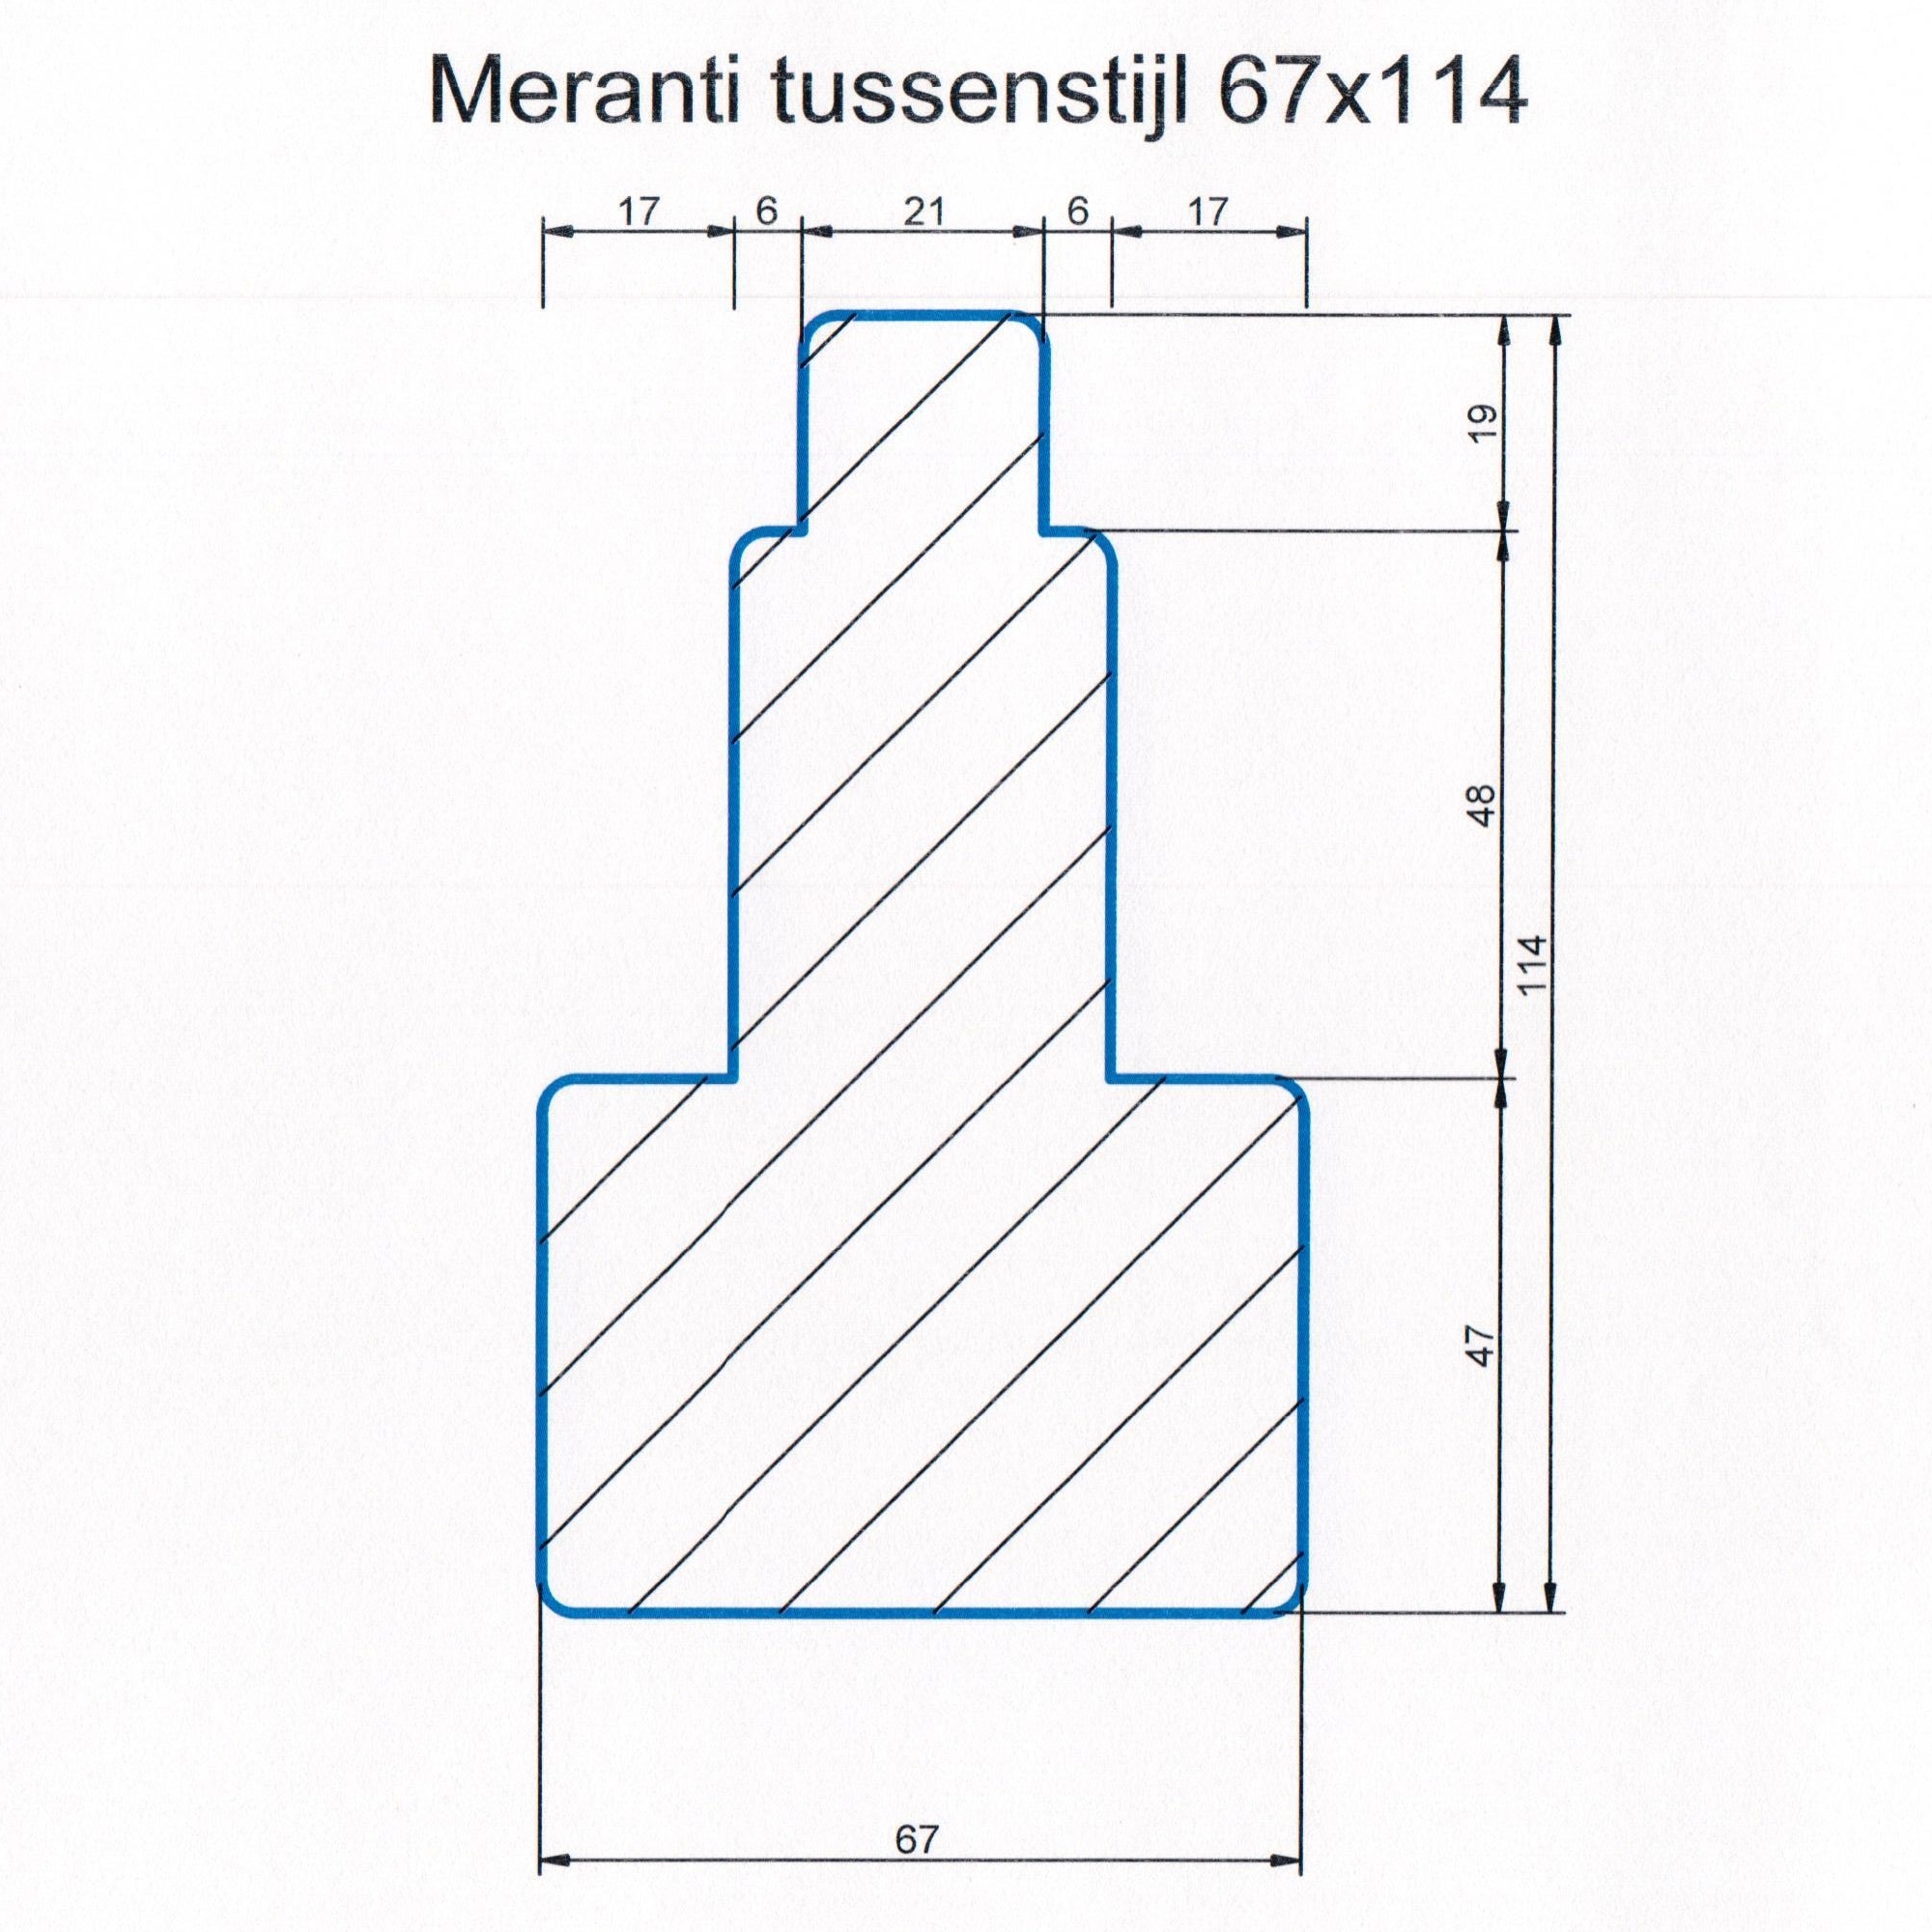 Meranti 67x114 kozijnhout Tussenstijl L=3050 mm